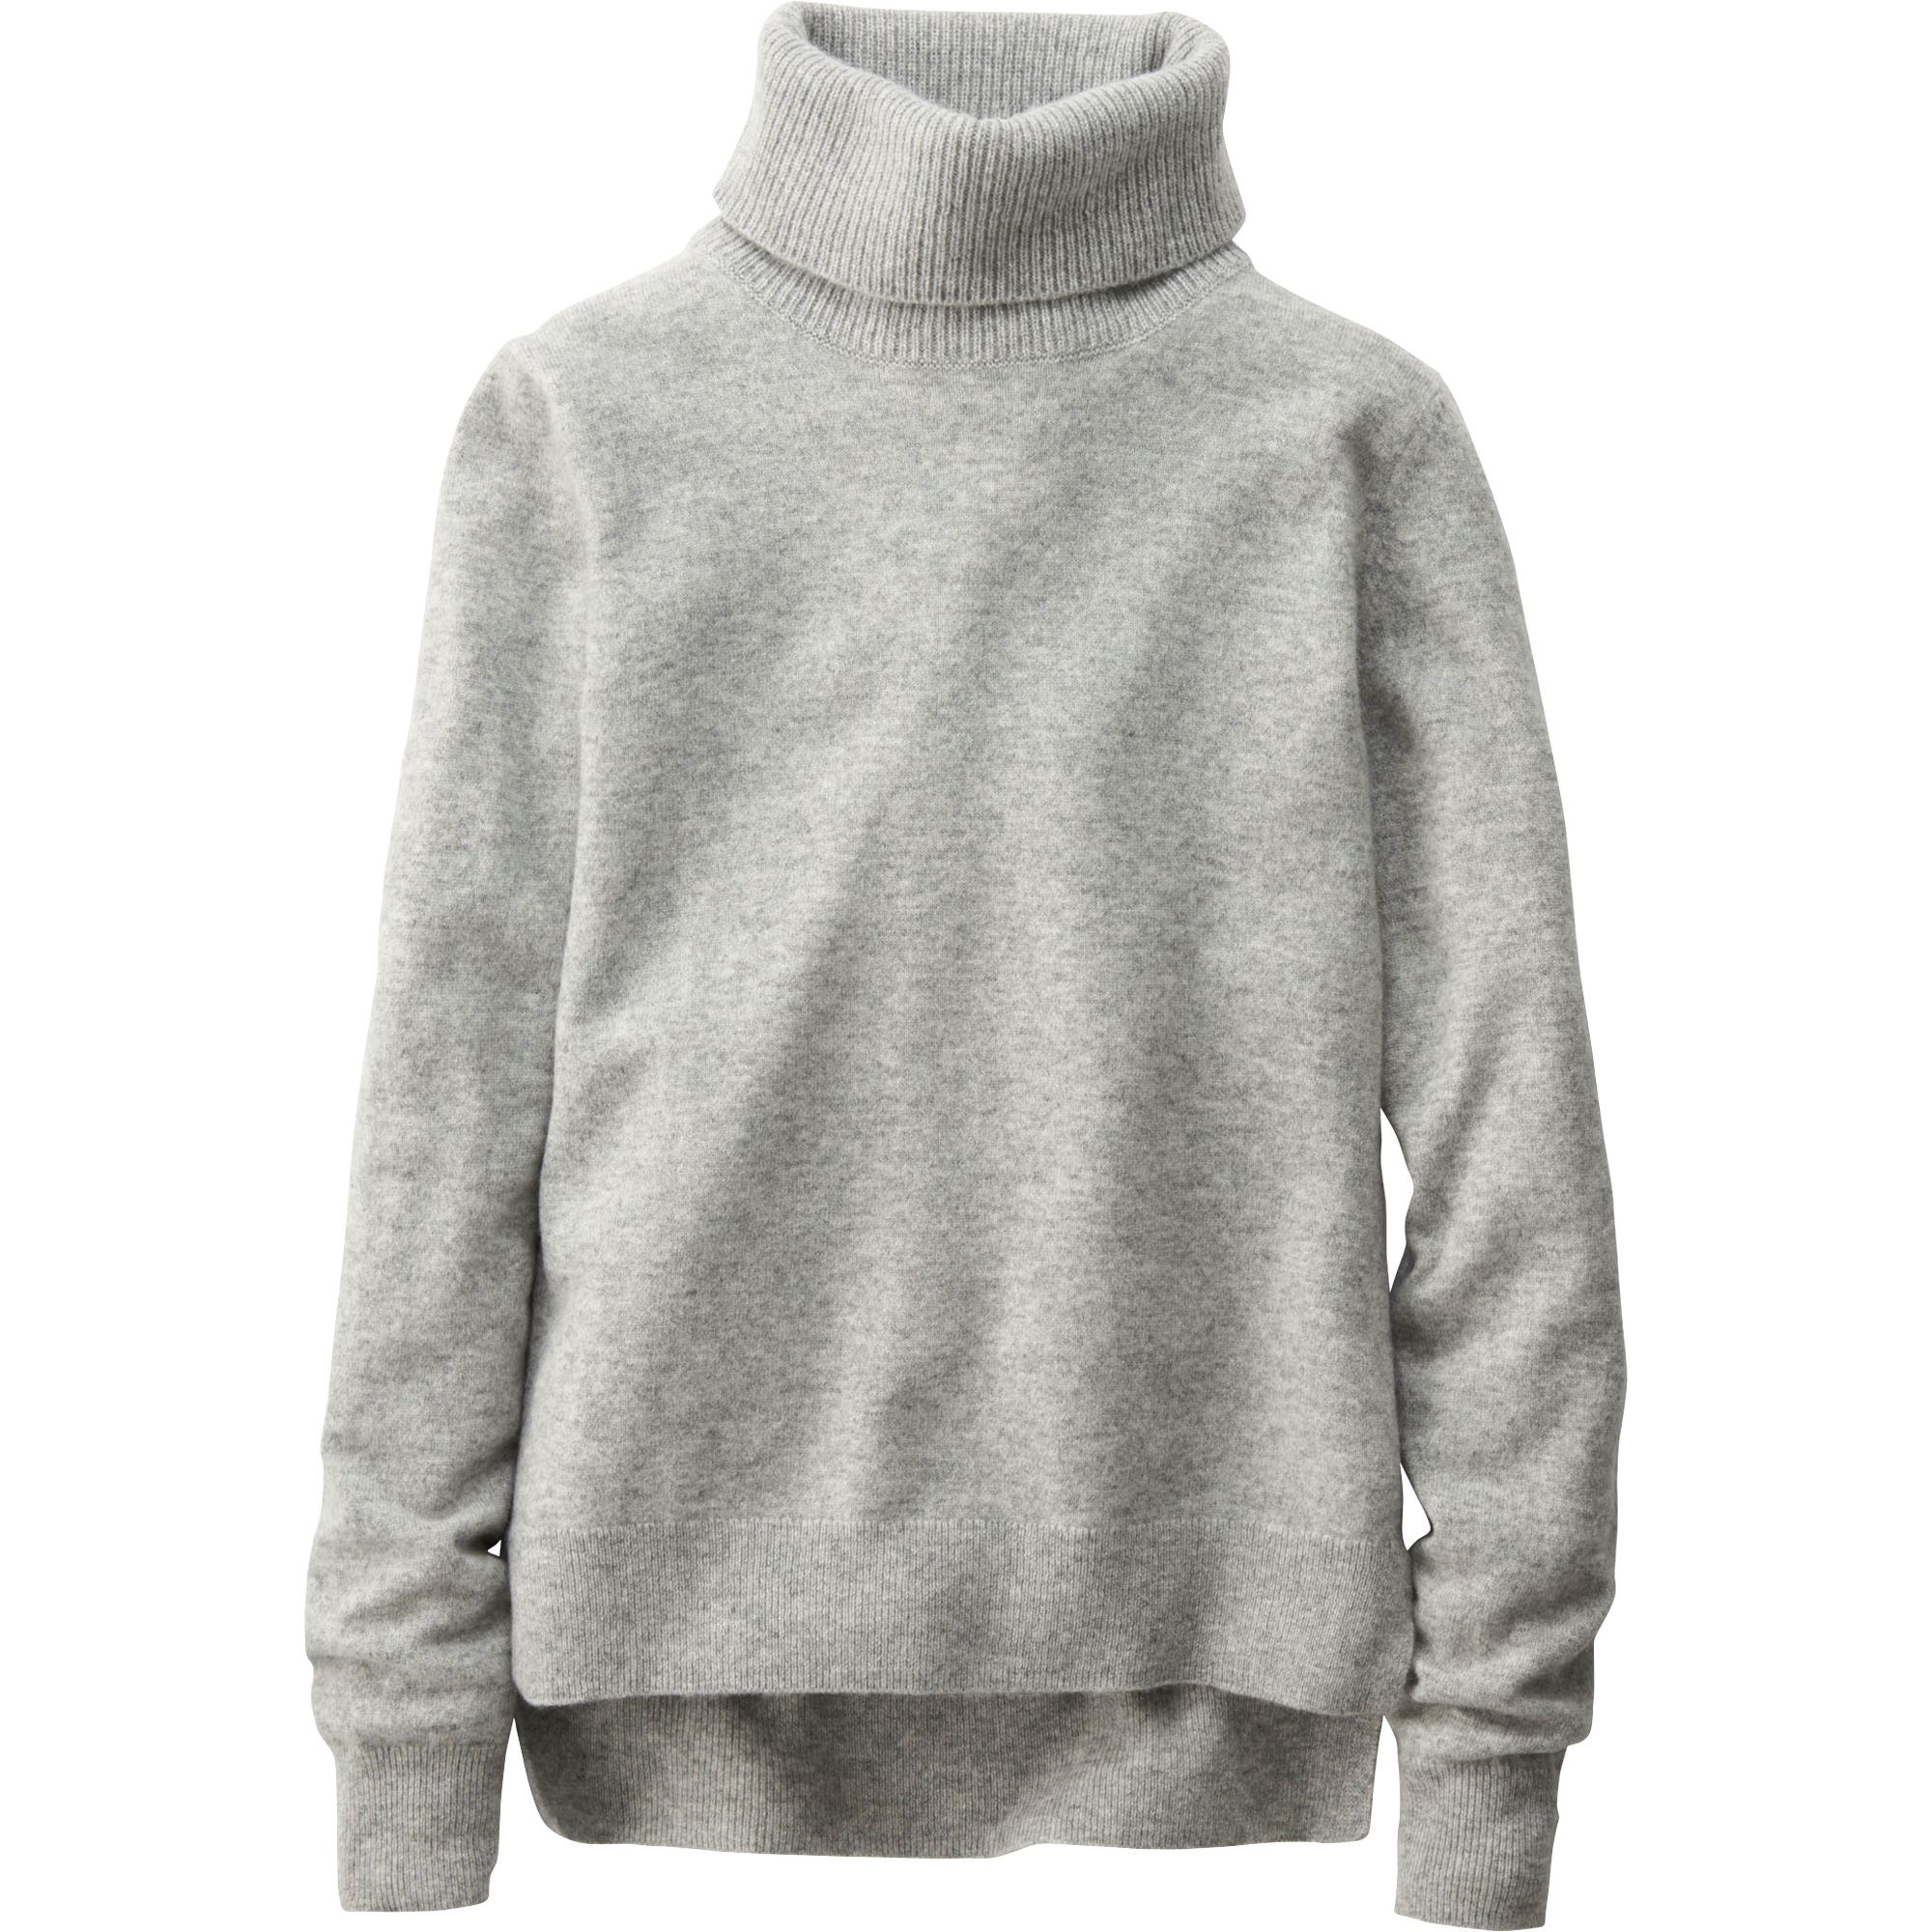  Uniqlo  Women Idlf Cashmere Turtleneck  Sweater in Gray 